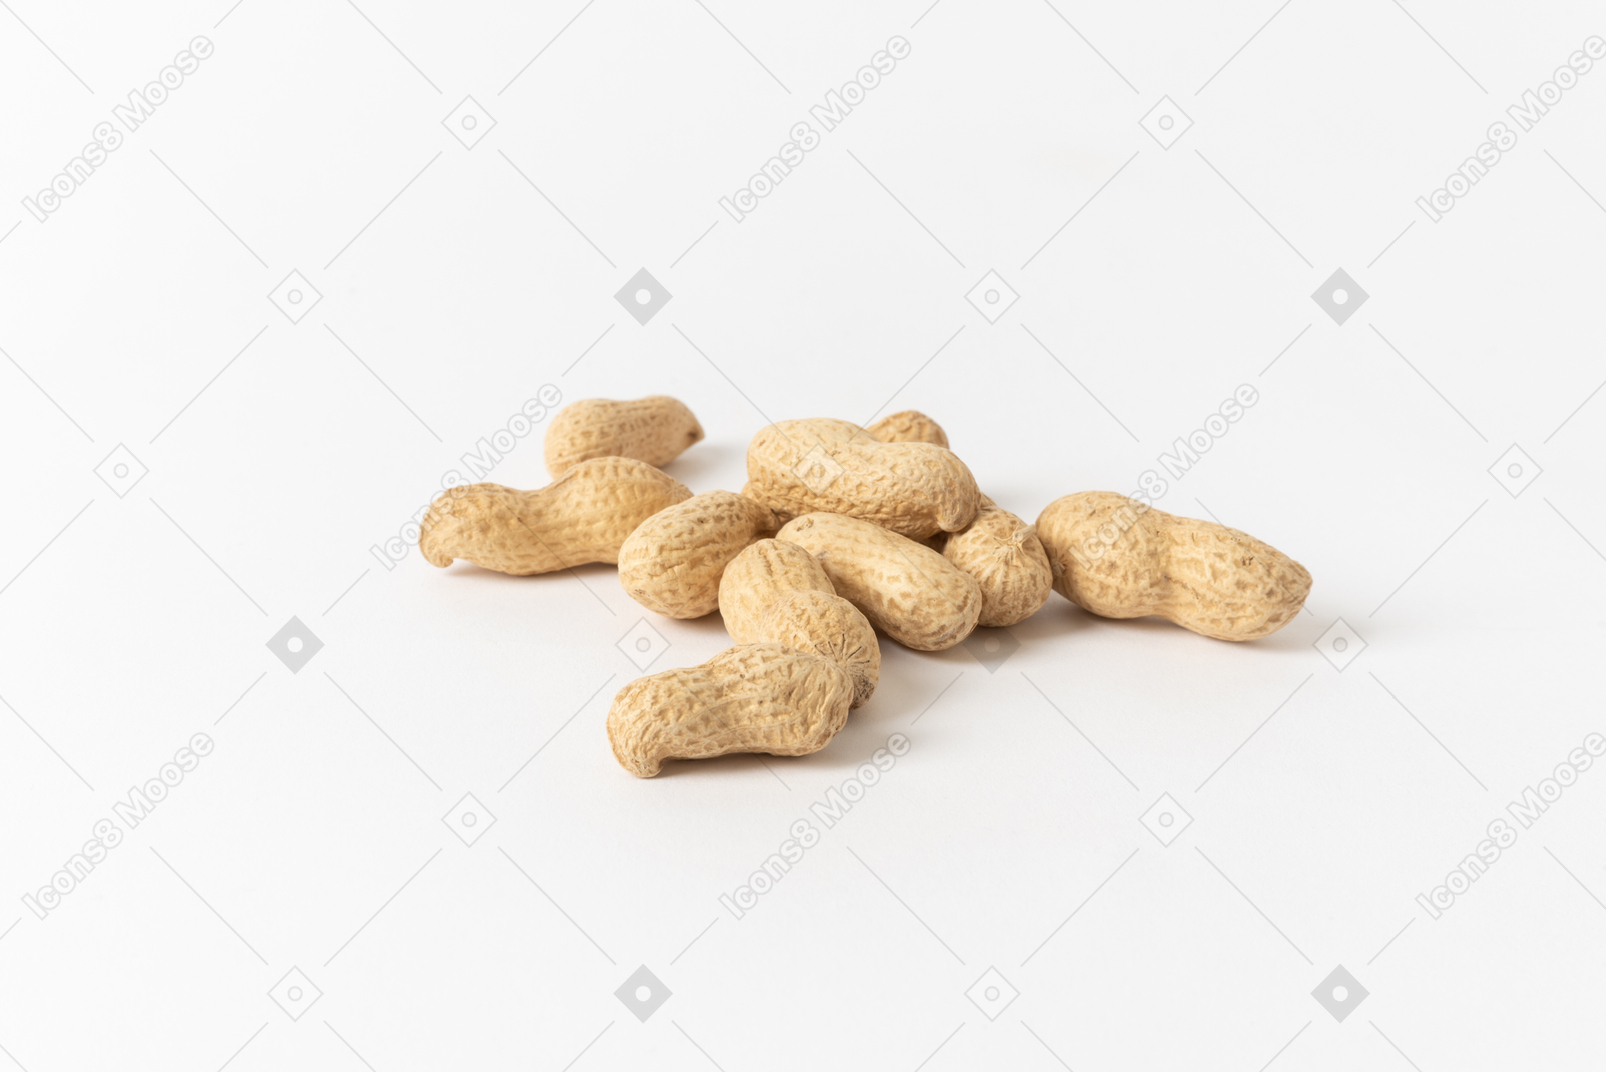 Geröstete und gesalzene erdnüsse sind ein klassischer snack